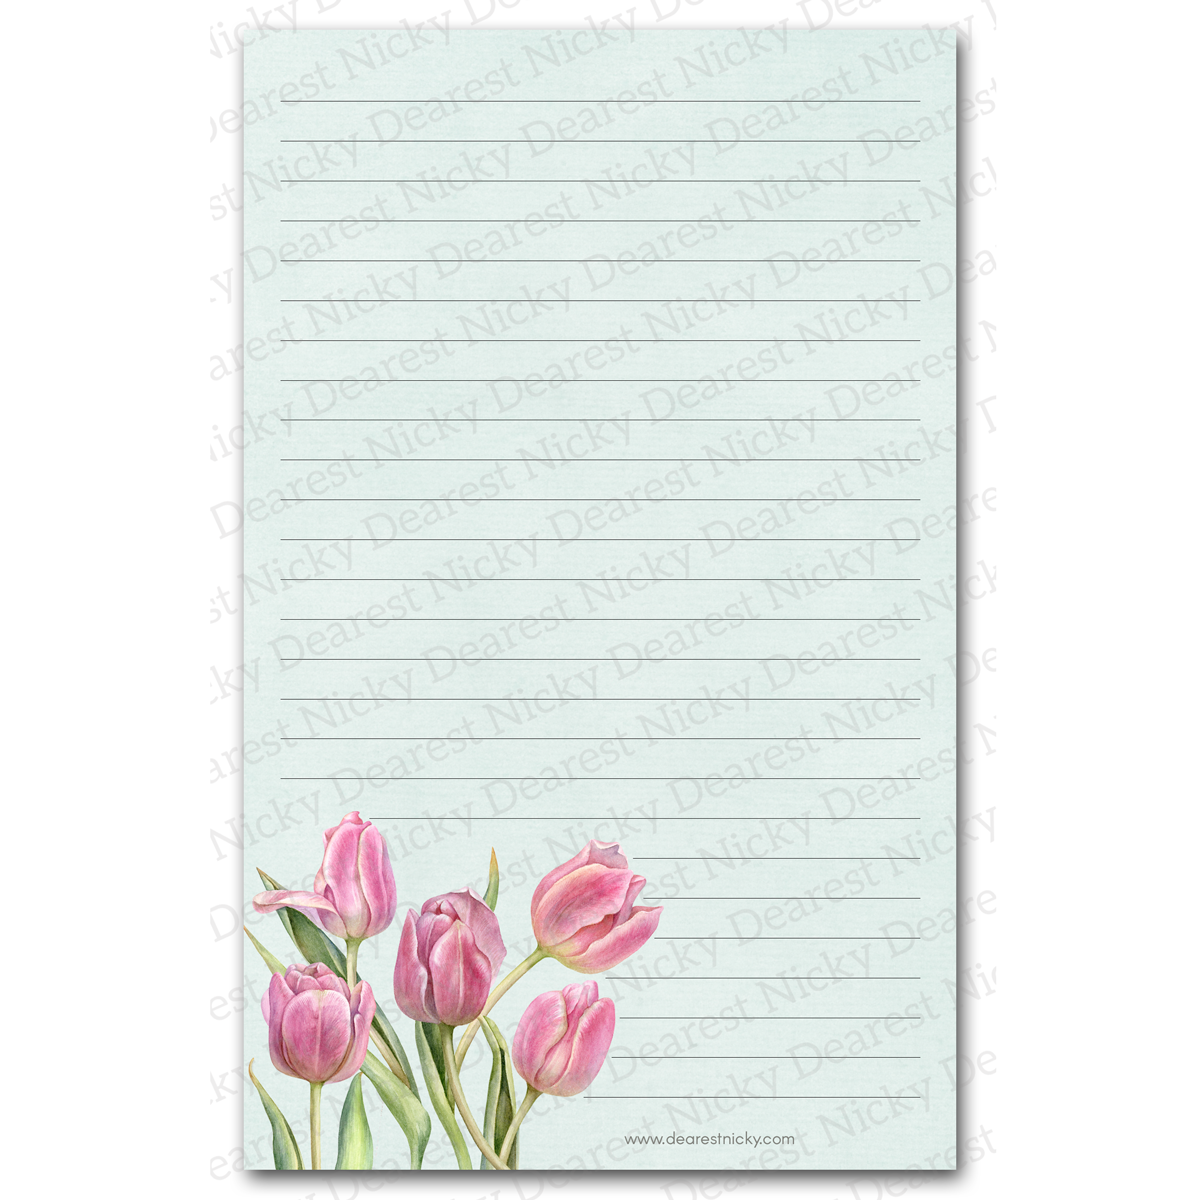 Papier à lettres avec tulipes roses